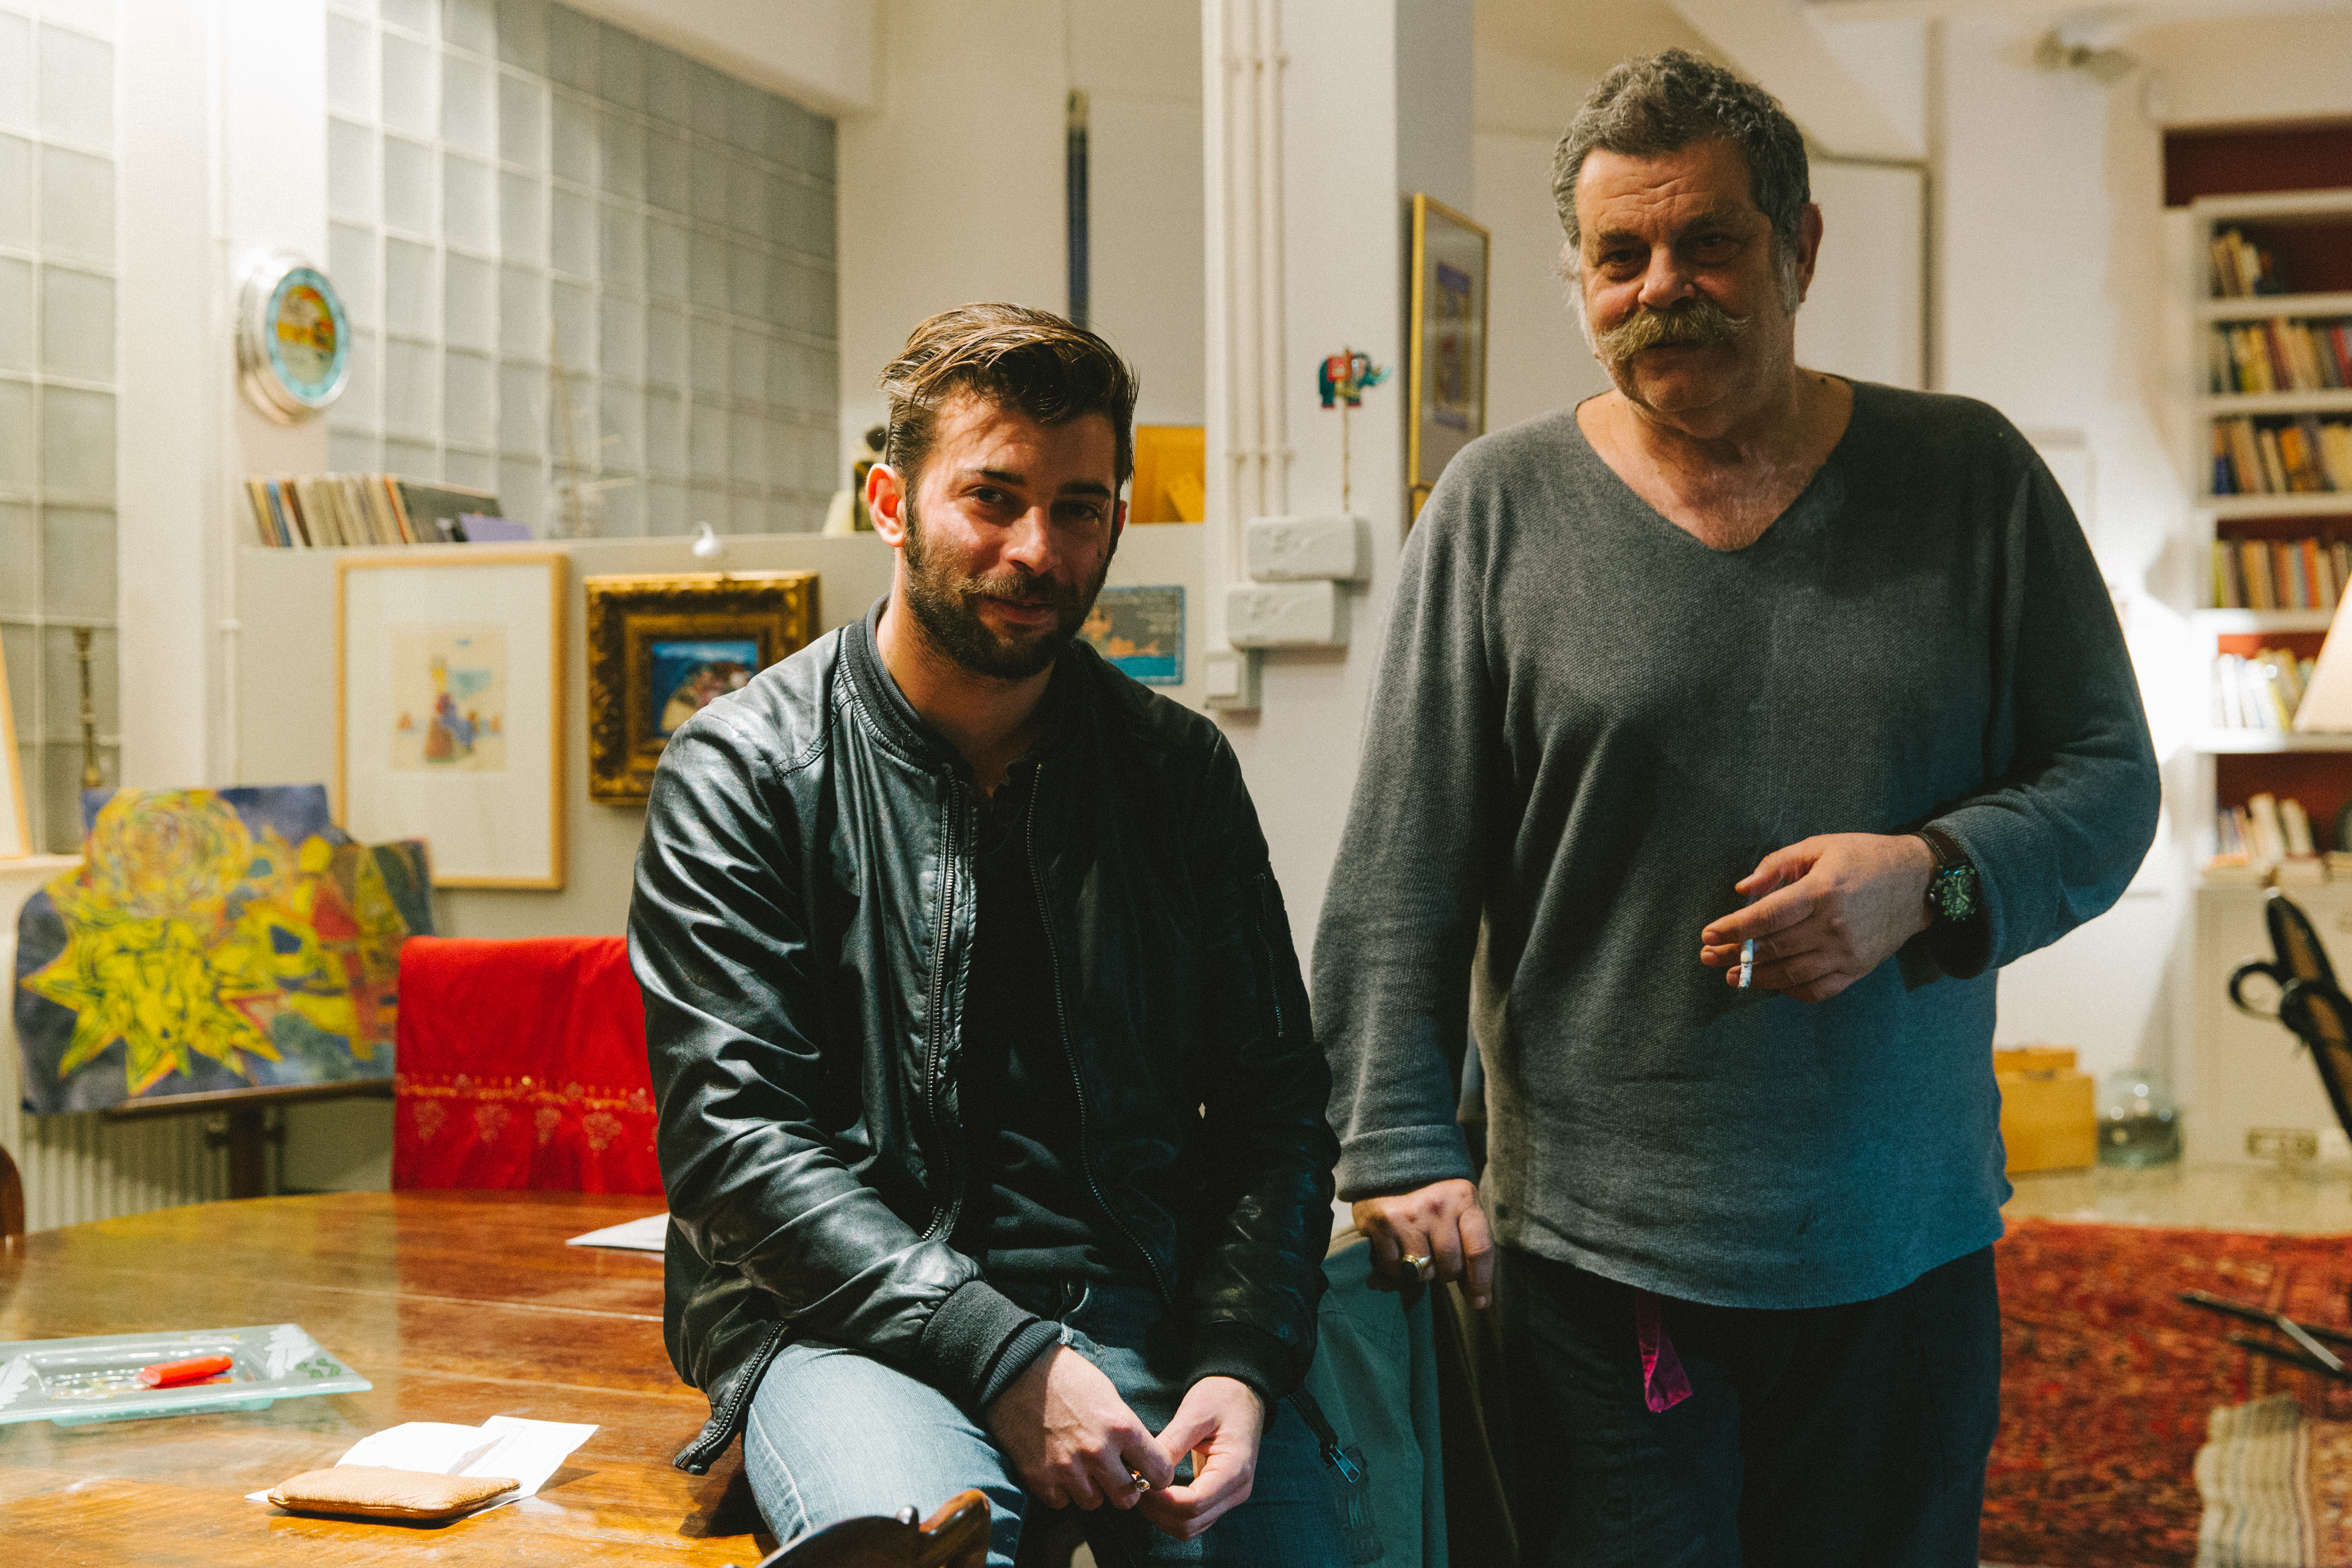 Από αριστερά: Ο σκηνοθέτης Φοίβος Κοντογιάννης & ο αρχιτέκτονας Κώστας Γουζέλης (φωτογραφία: Γιάννης Δρακουλίδης)